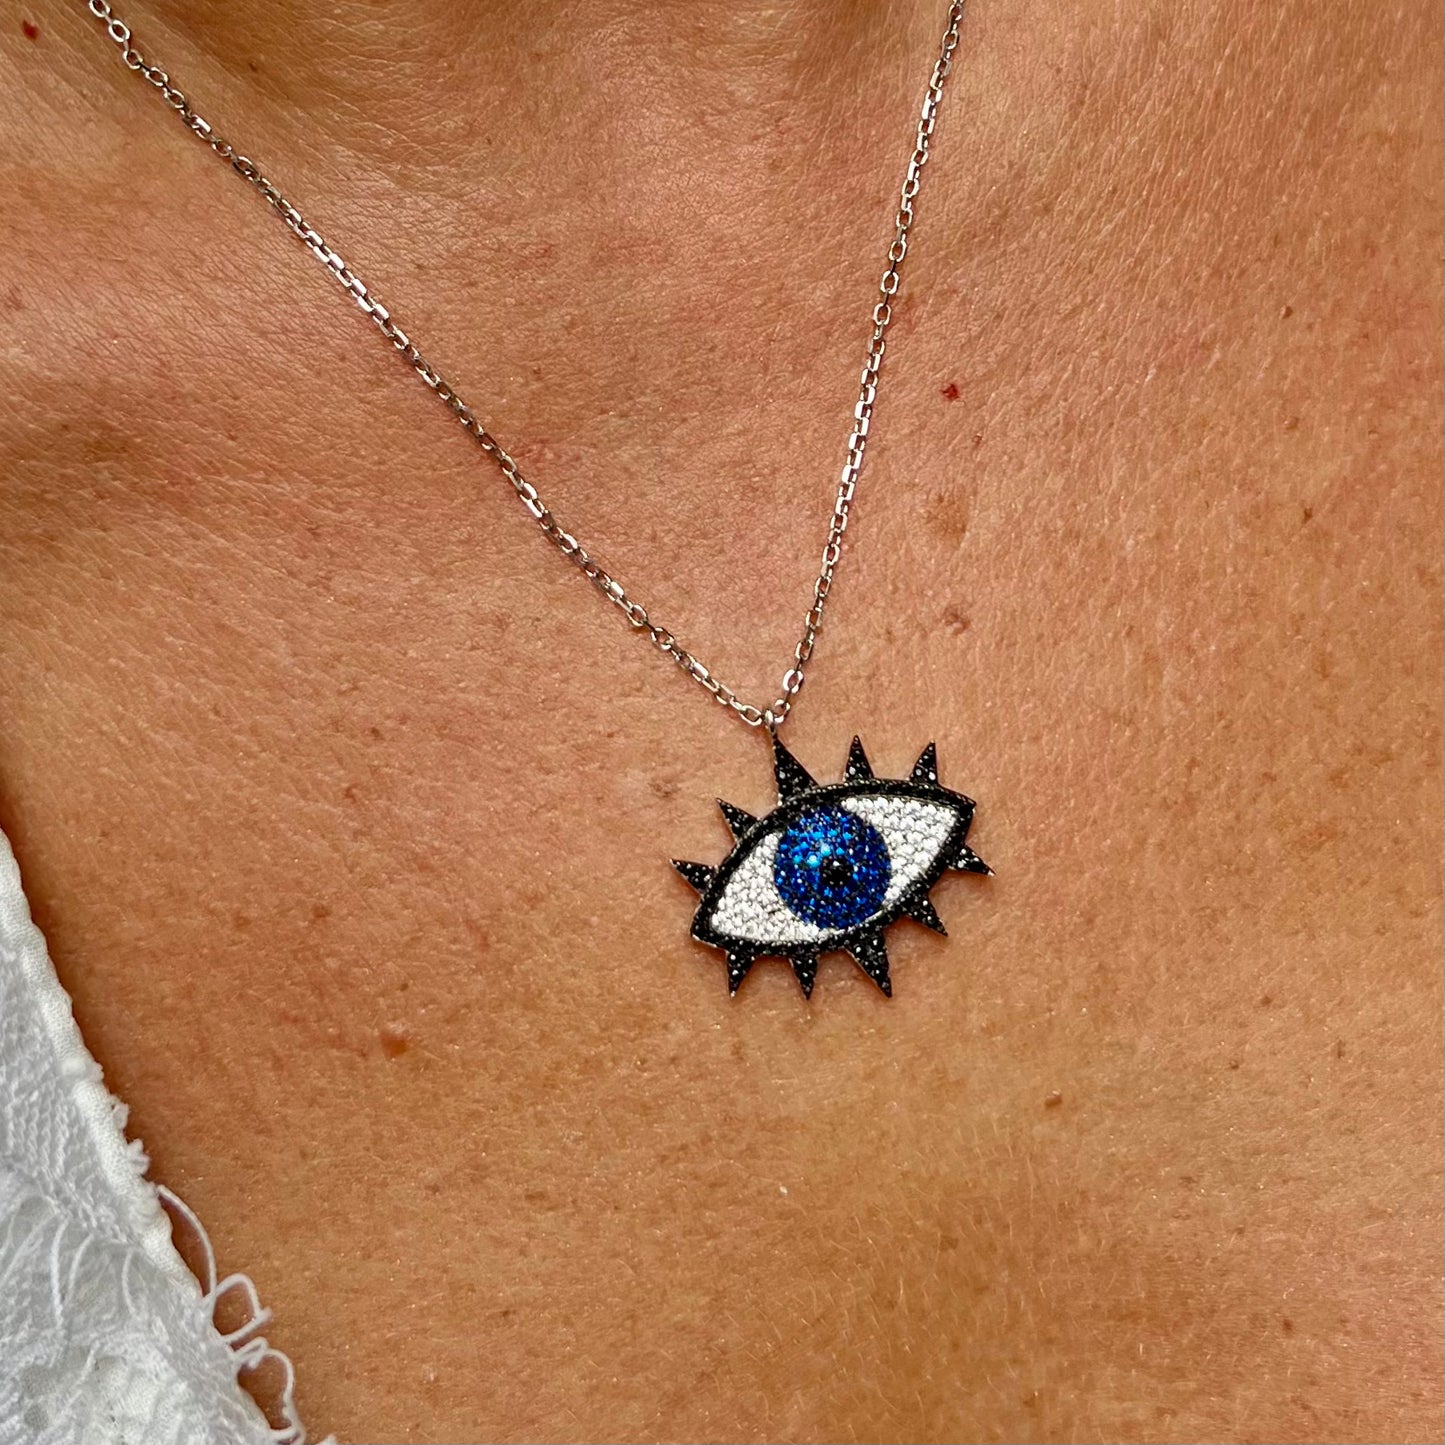 Greek Eye Necklace in Sterling Silver 925